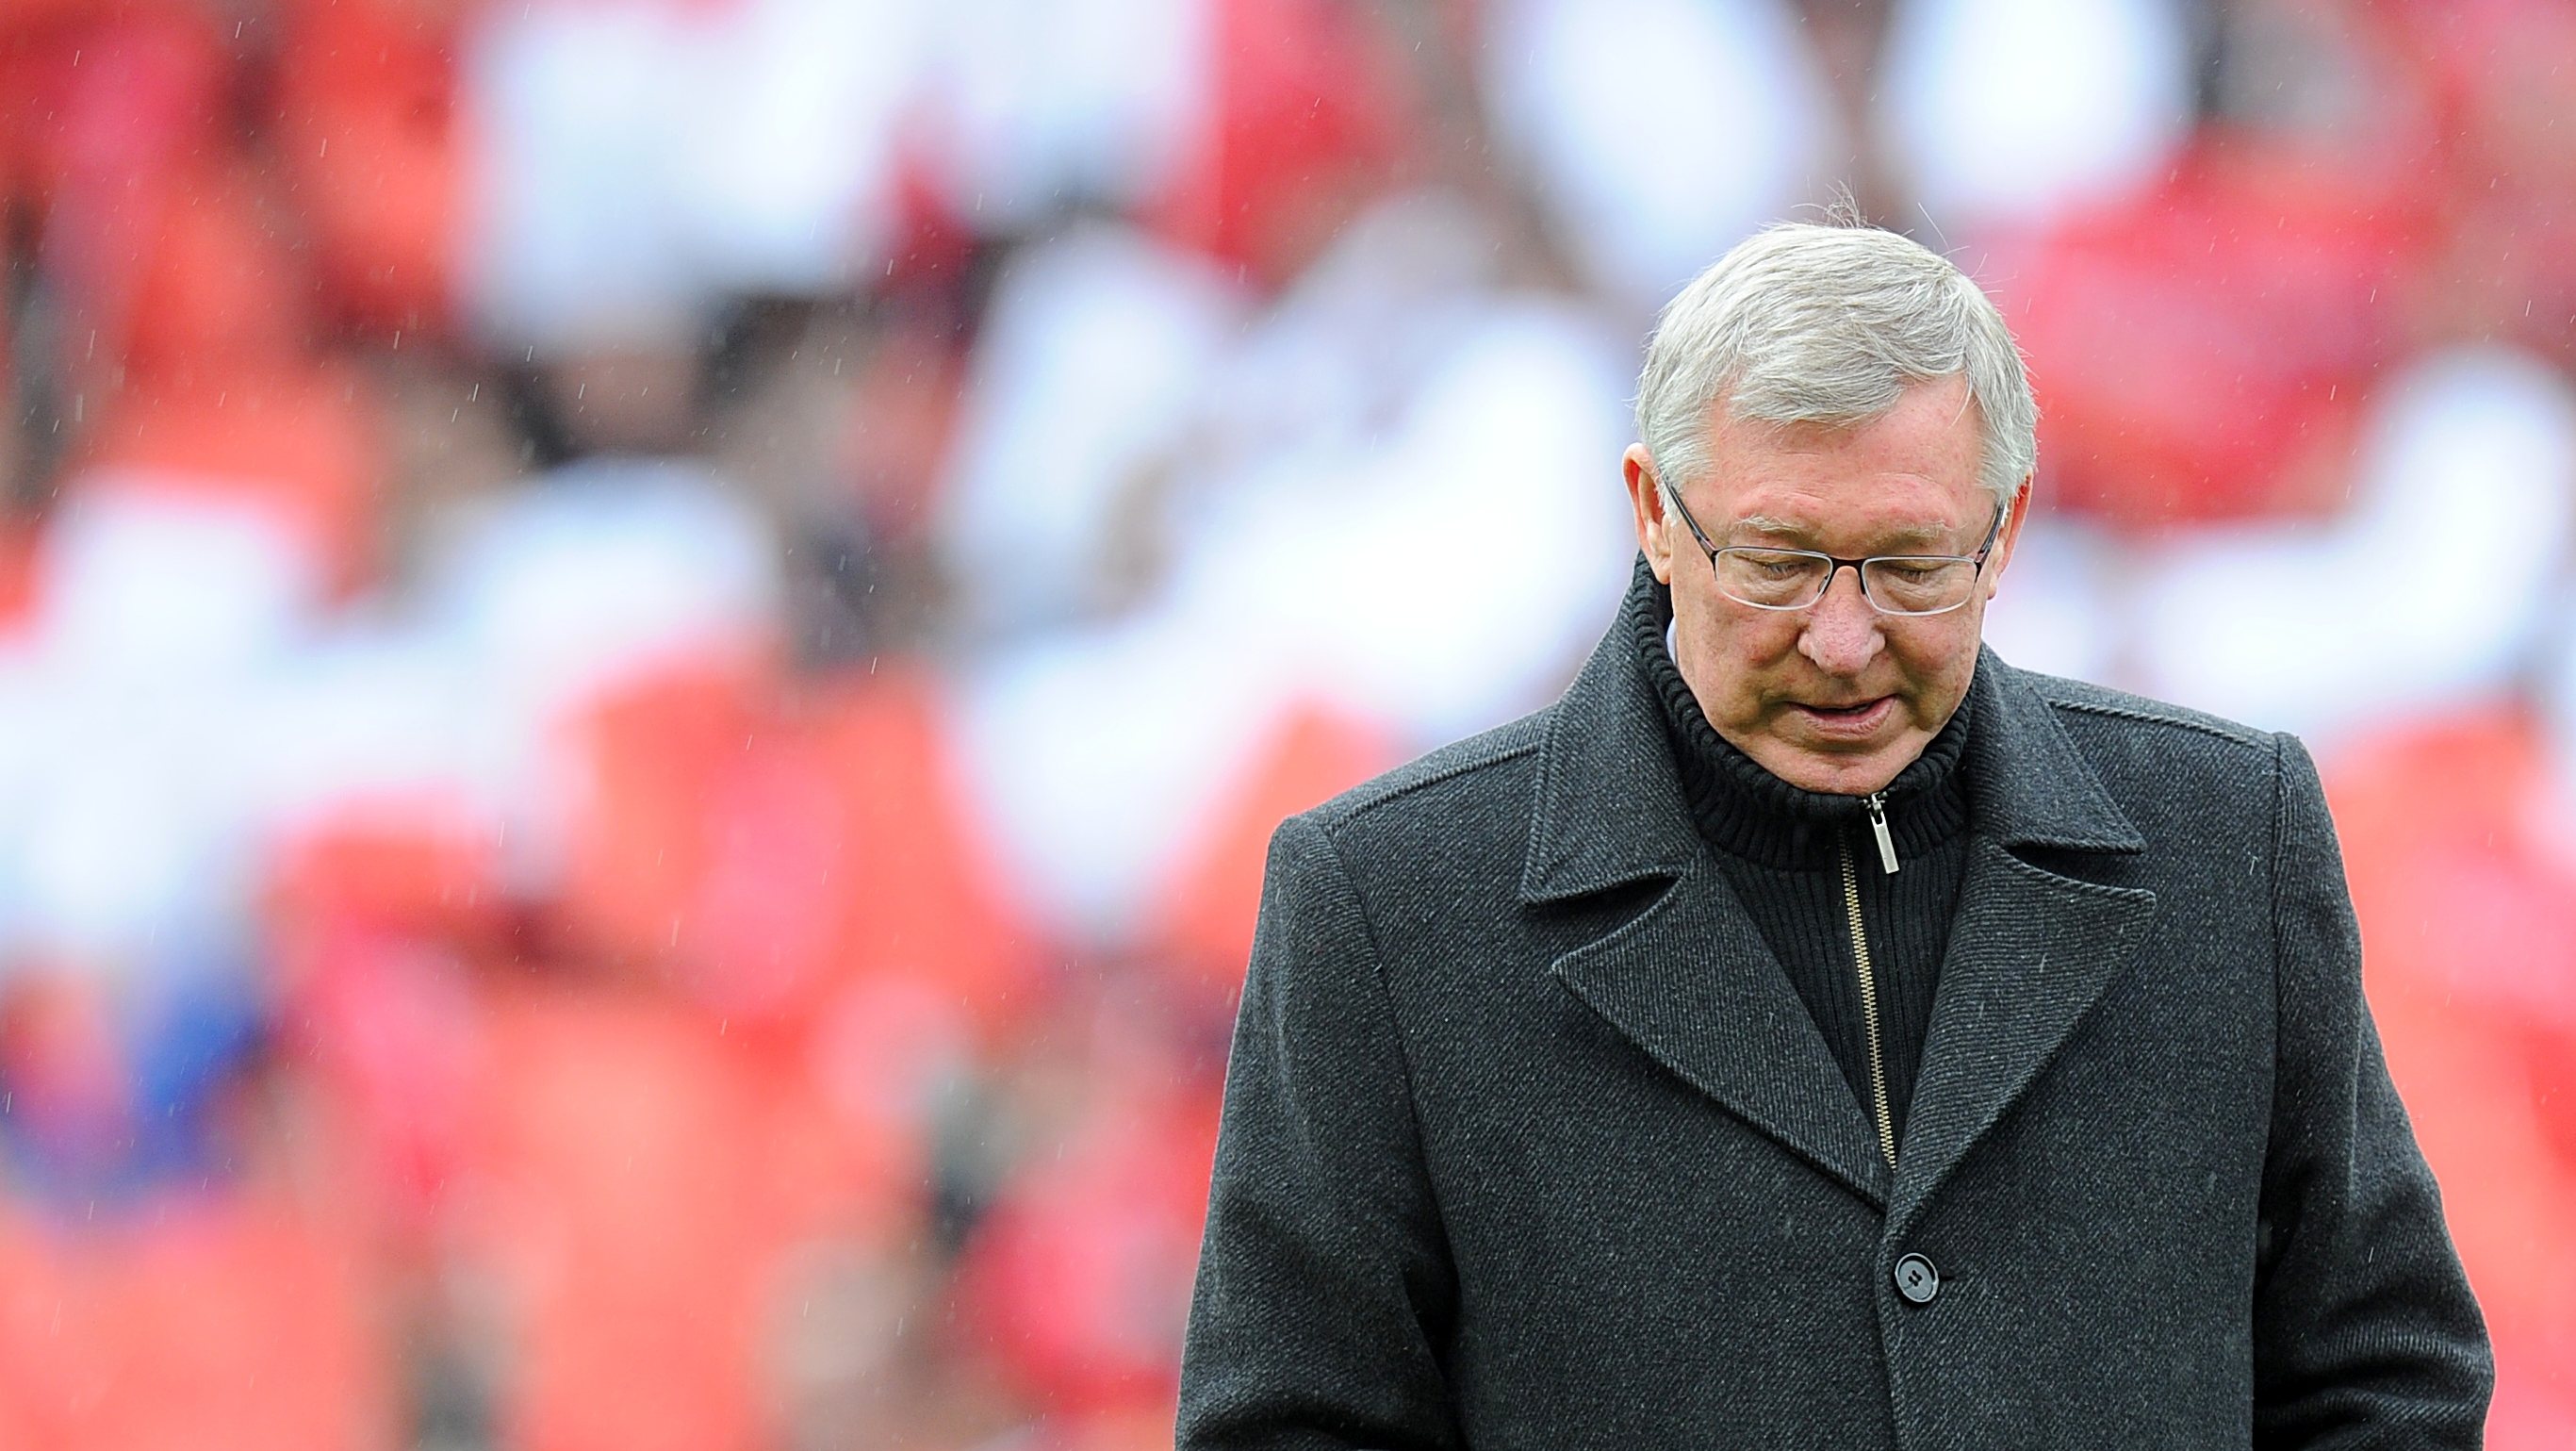 O antigo técnico do Manchester United deixou o futebol em 2013 depois de 27 anos em Old Trafford